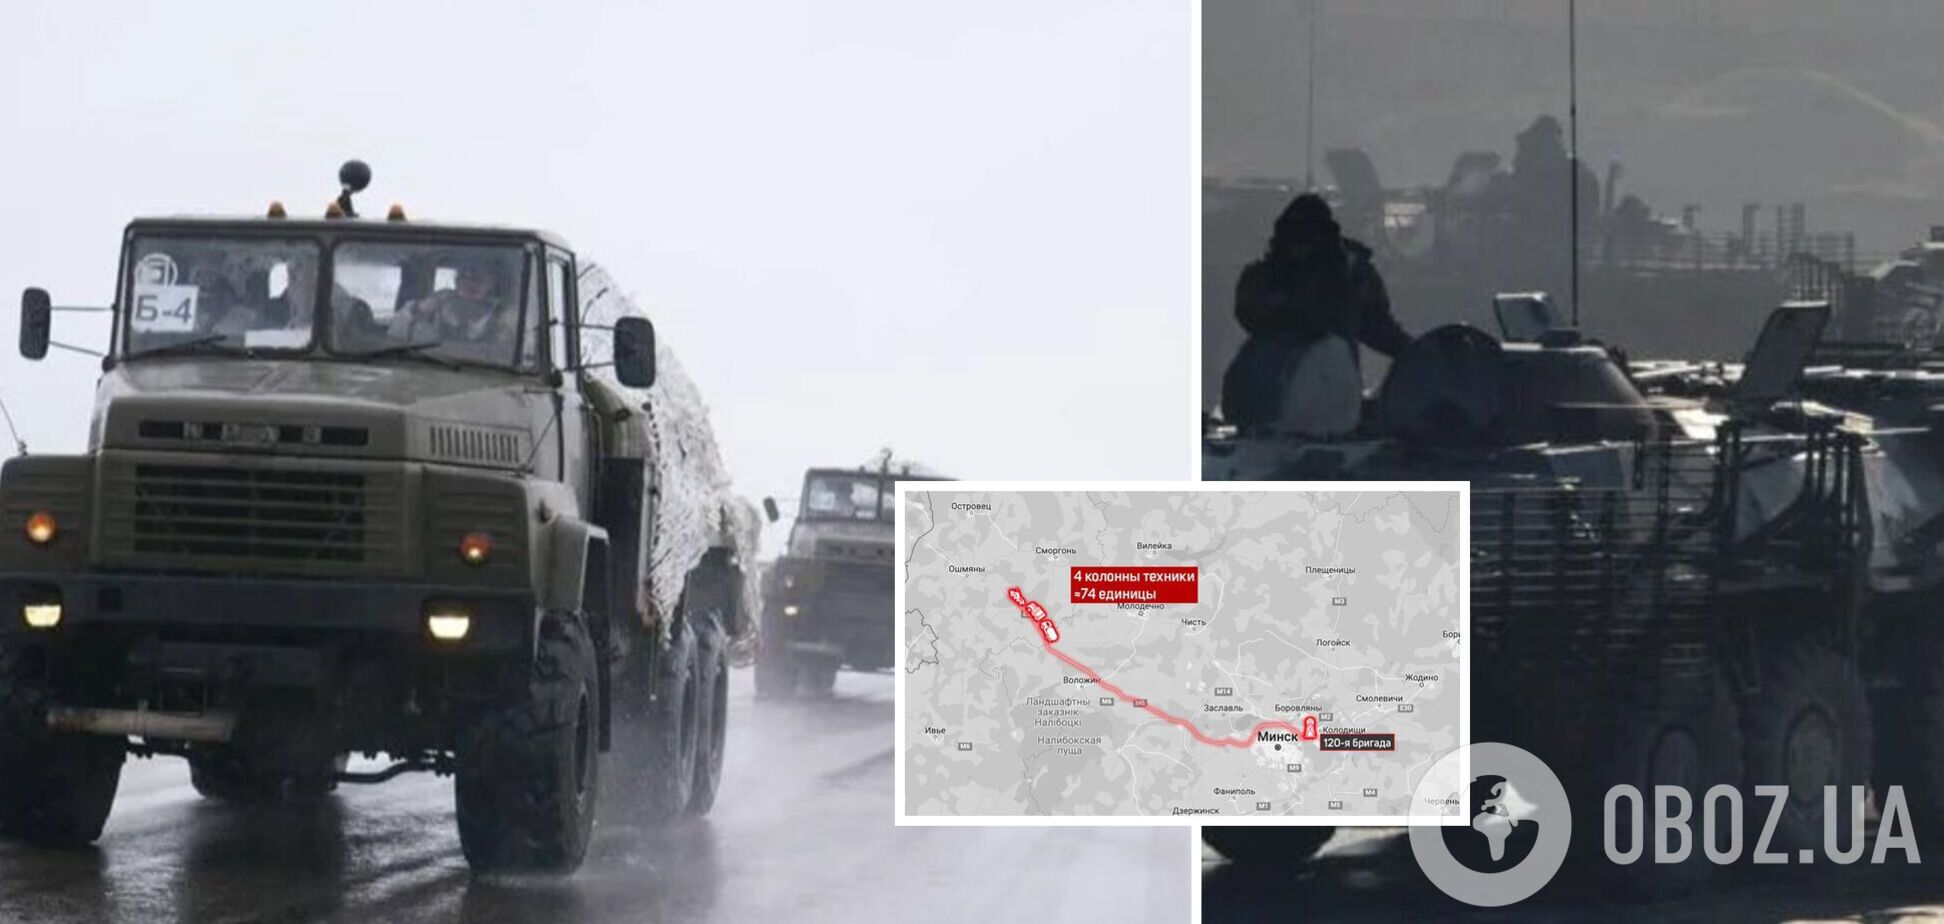 Заявили о проверке 'боеготовности': из Минска к границе с Литвой отправились четыре колонны с военной техникой – СМИ